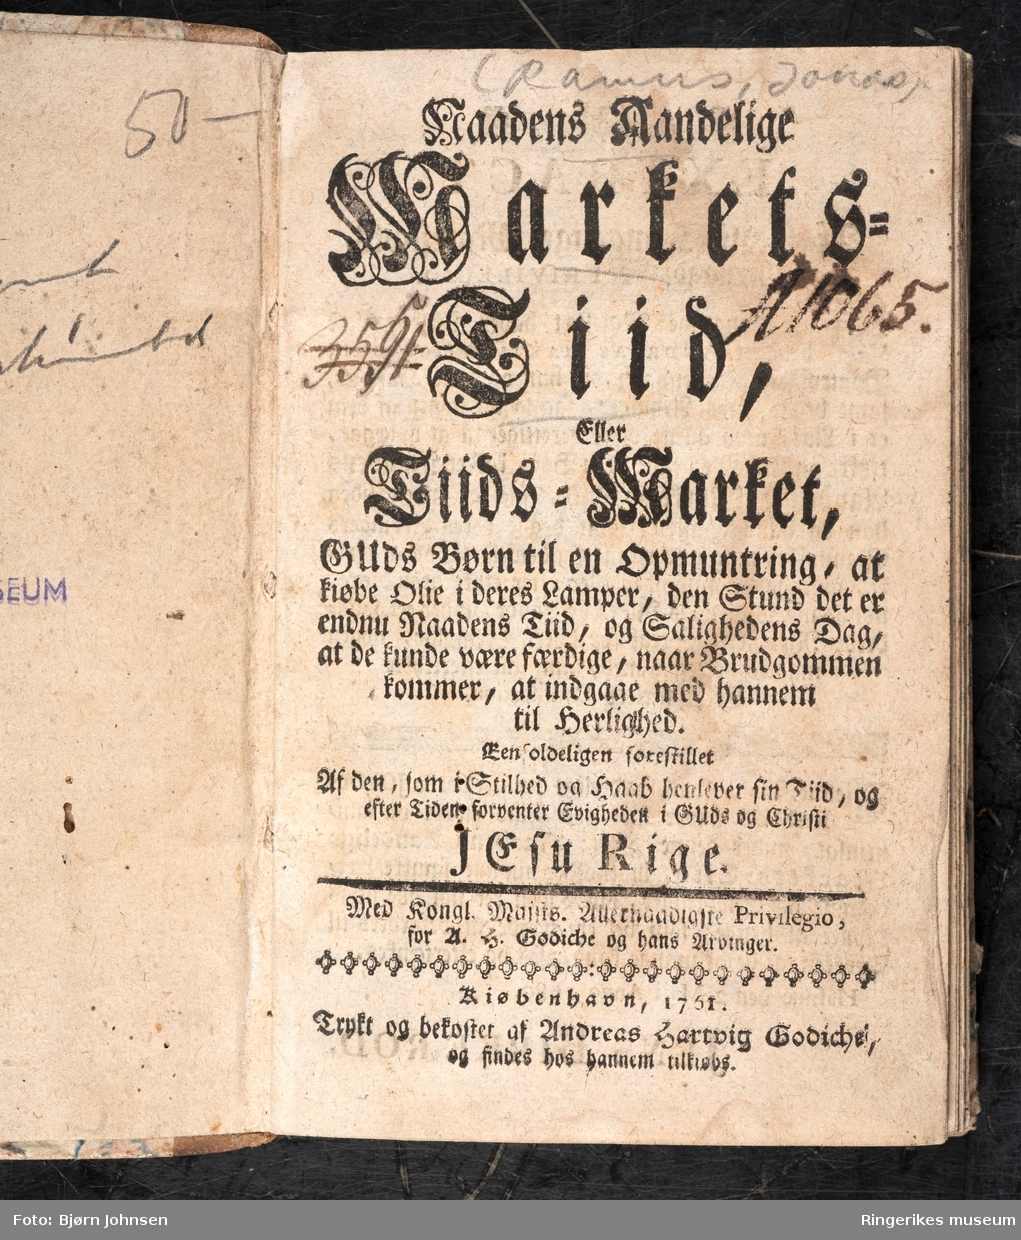 Naadens Aandelige Markets-Tiid, skrevet av Jonas Ramus (sogneprest i Norderhov) og utgitt første gang i 1680. Dette eksemplaret er trykket i København i 1751 og inneholder 224 sider. Dette var en populær andaktsbok i flere generasjoner.